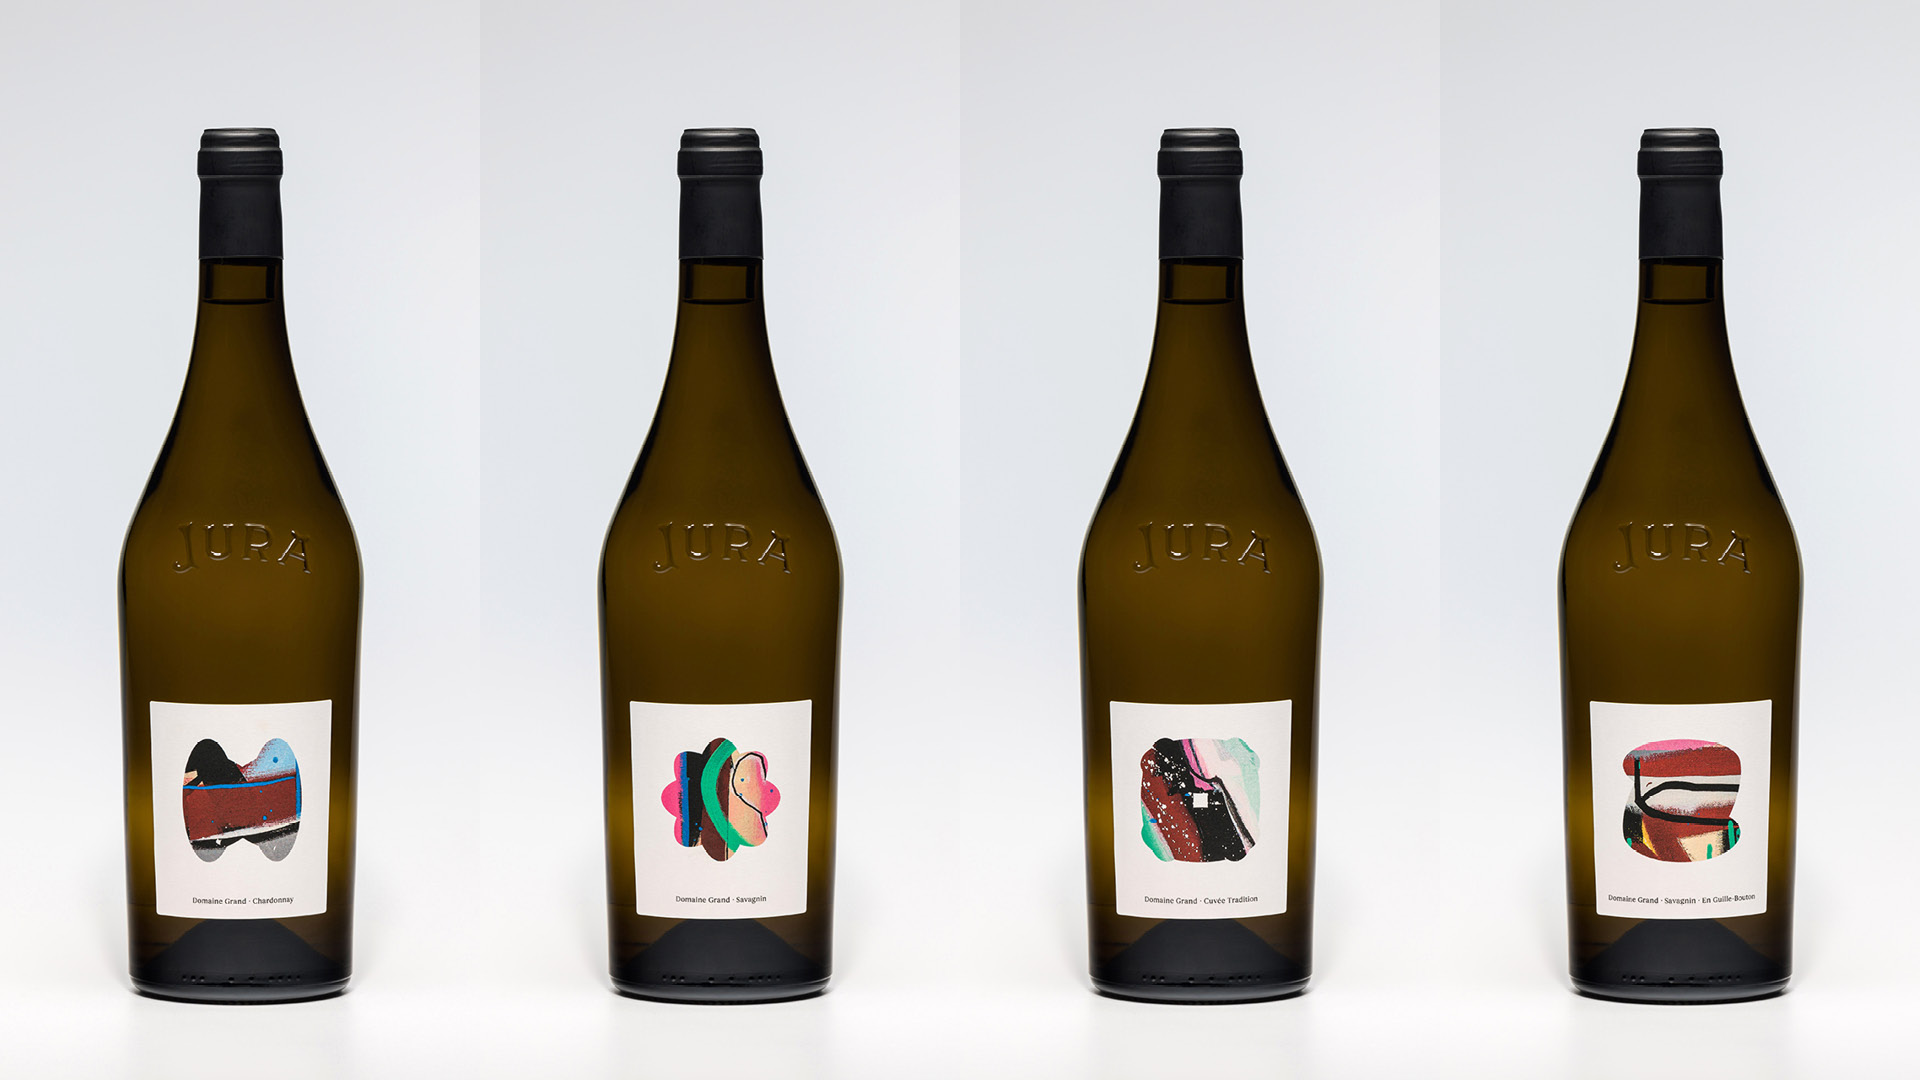 Étiquettes et bouteilles de vin du domaine Grand